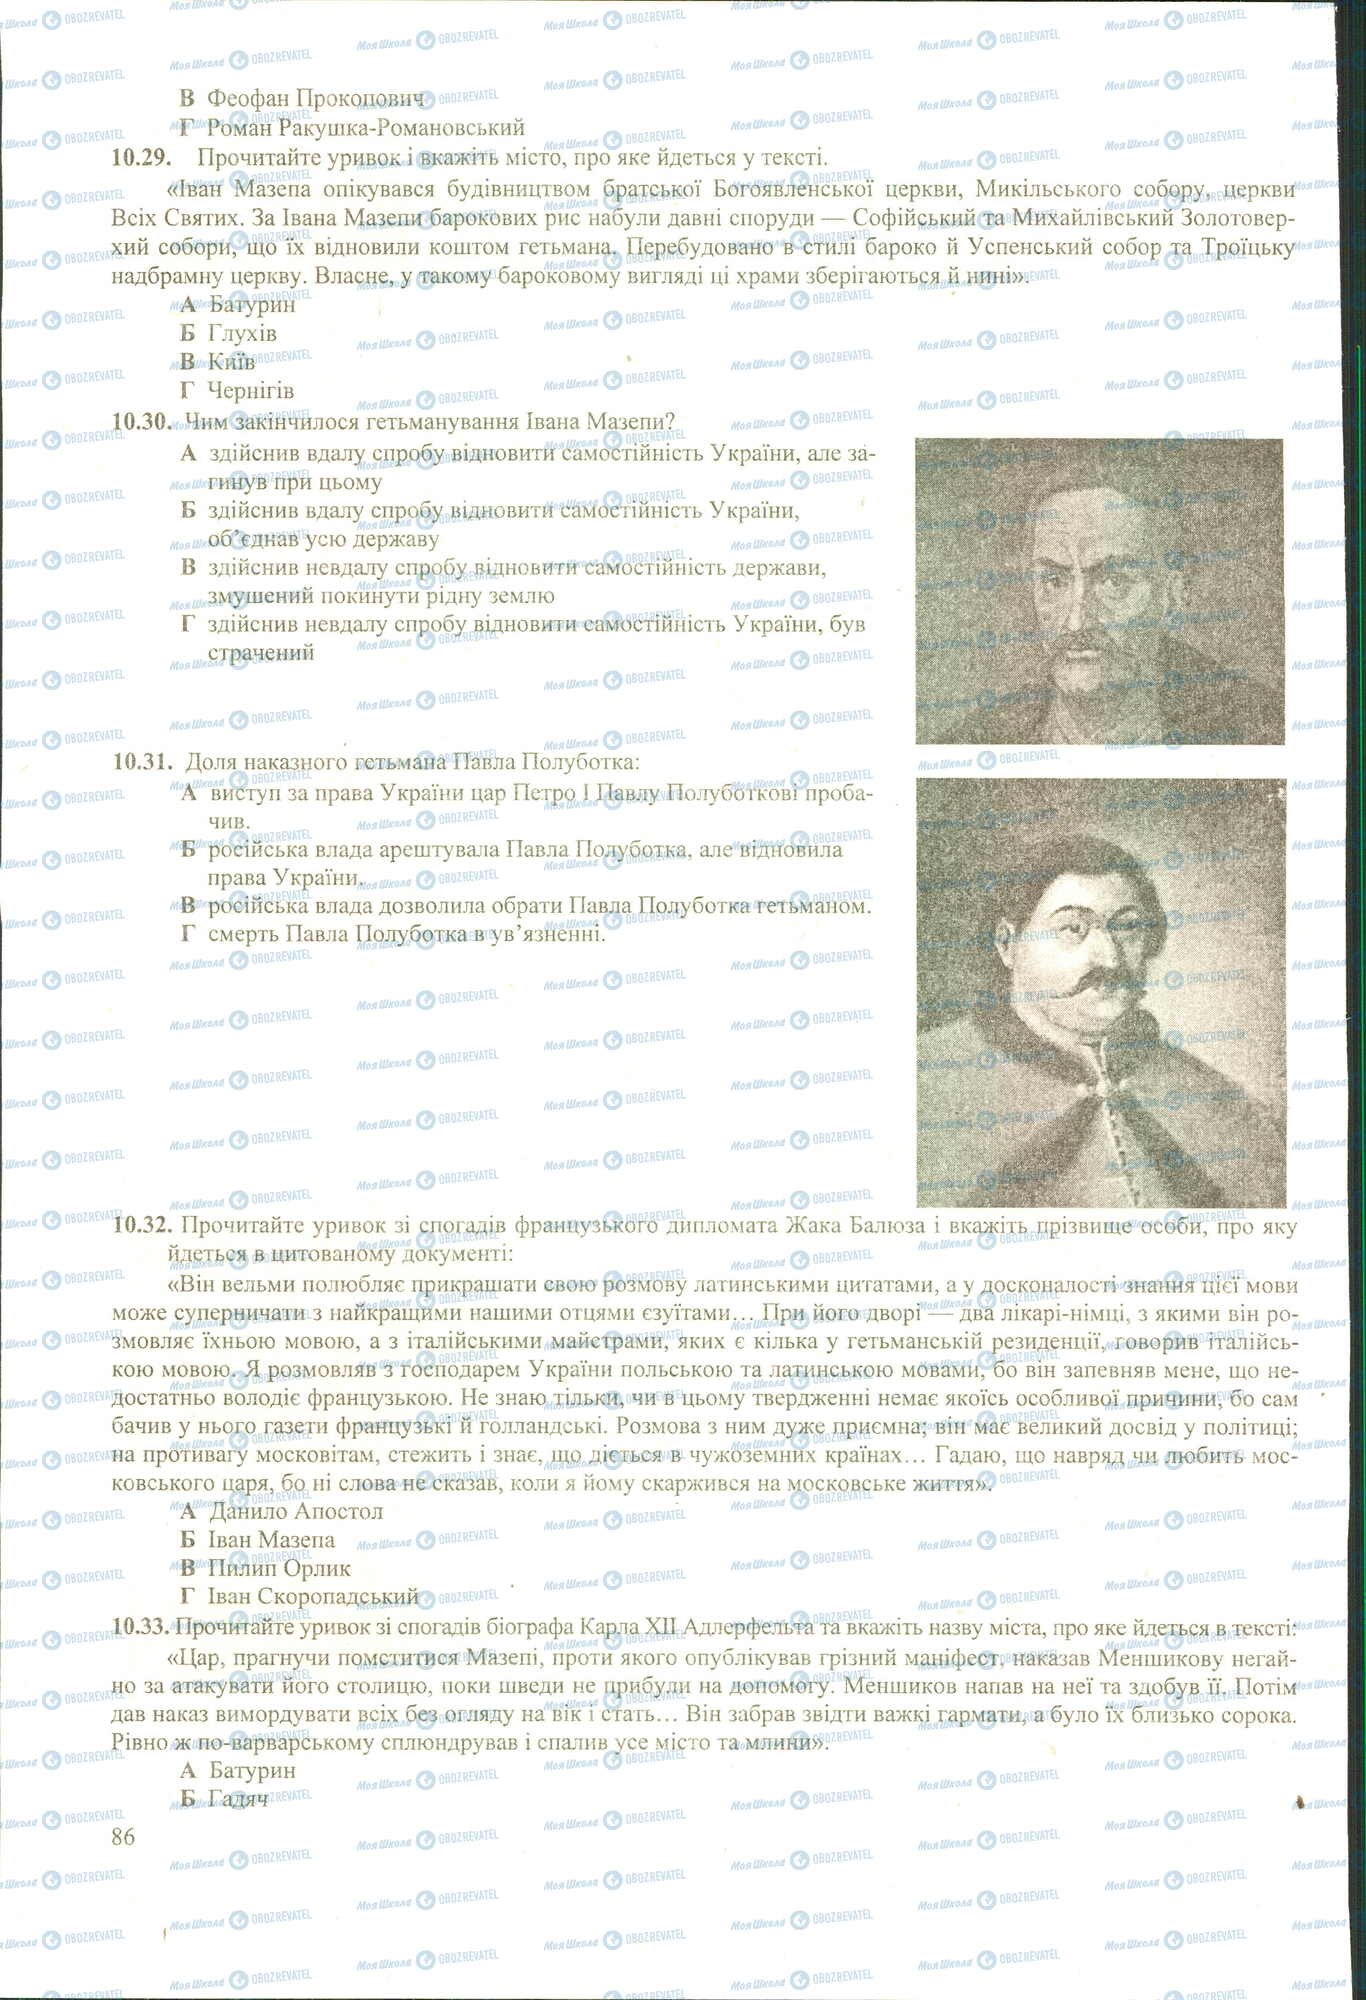 ЗНО История Украины 11 класс страница 29-33